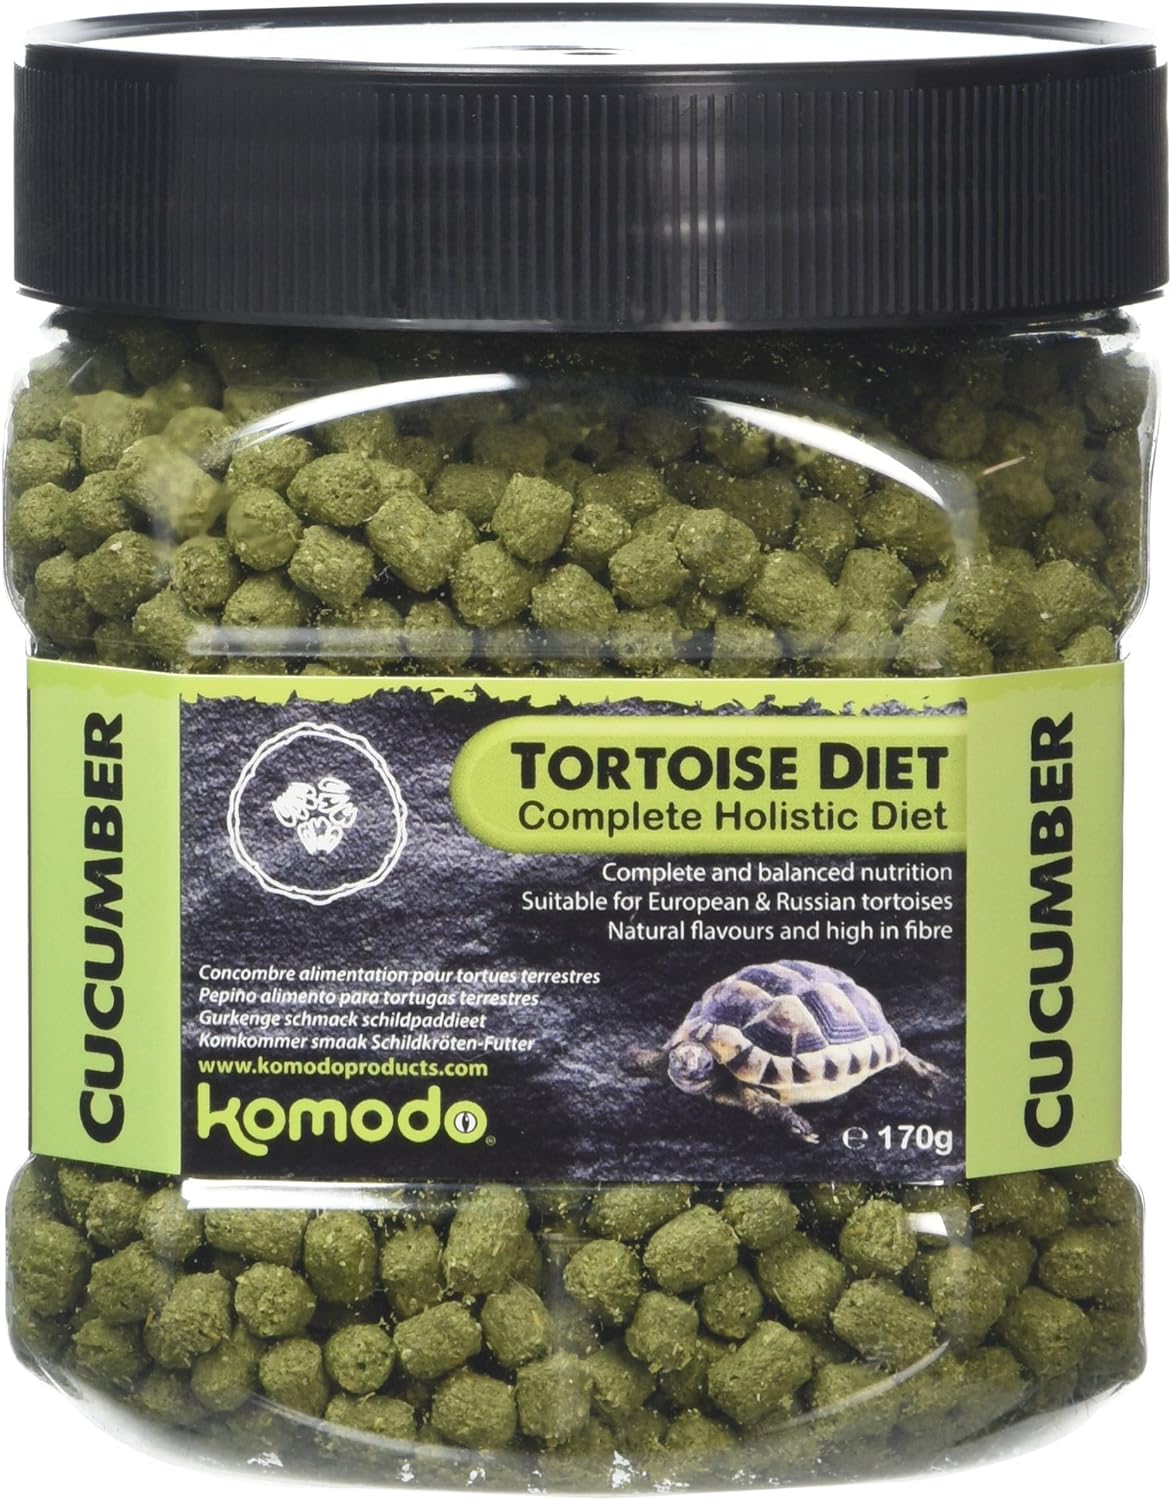 komodo-tortoise-diet-cucumber-170-gr-nourriture-saveur-concombre-pour-tortues-de-terre